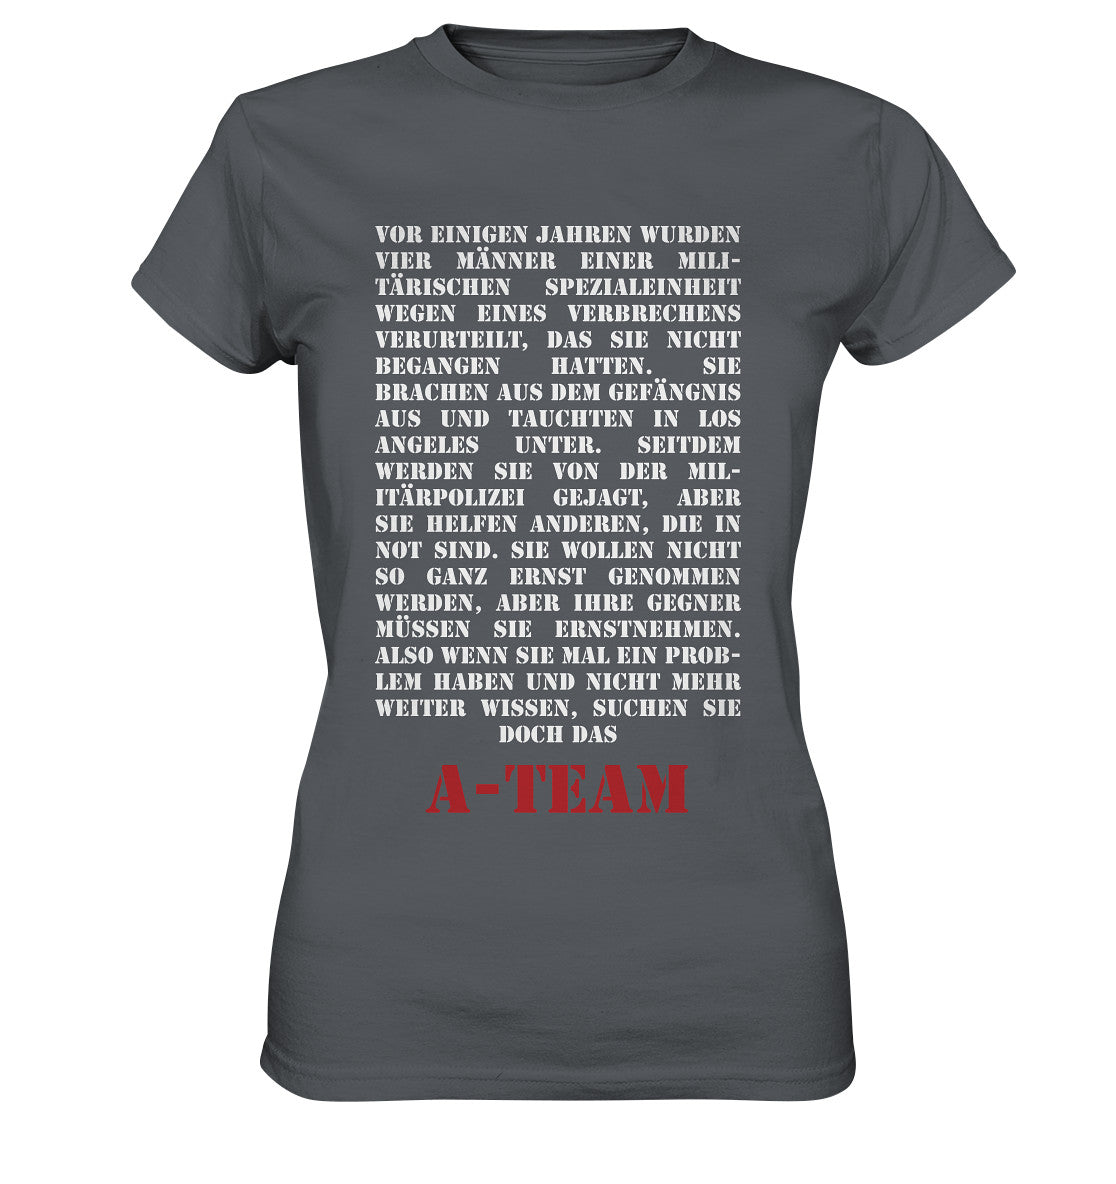 A-Team Theme - Ladies Premium Shirt